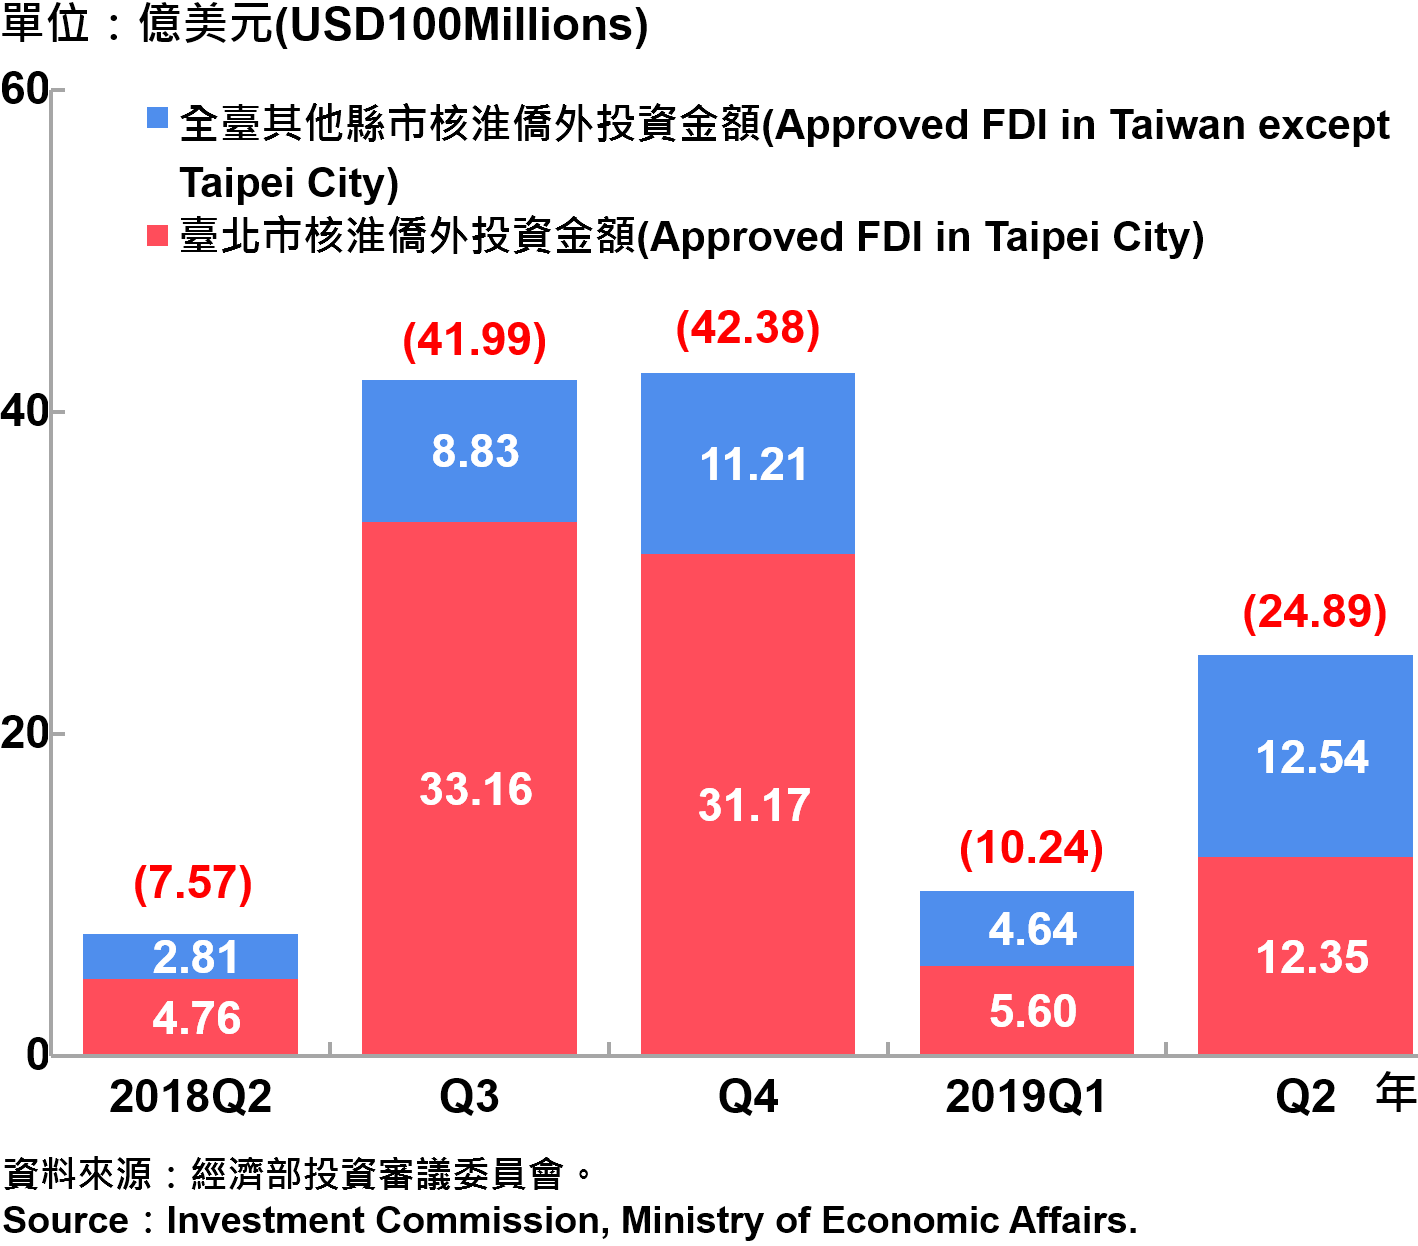 臺北市與全國僑外投資金額—2019Q2 Foreign Direct Investment（FDI）in Taipei City and Taiwan—2019Q2